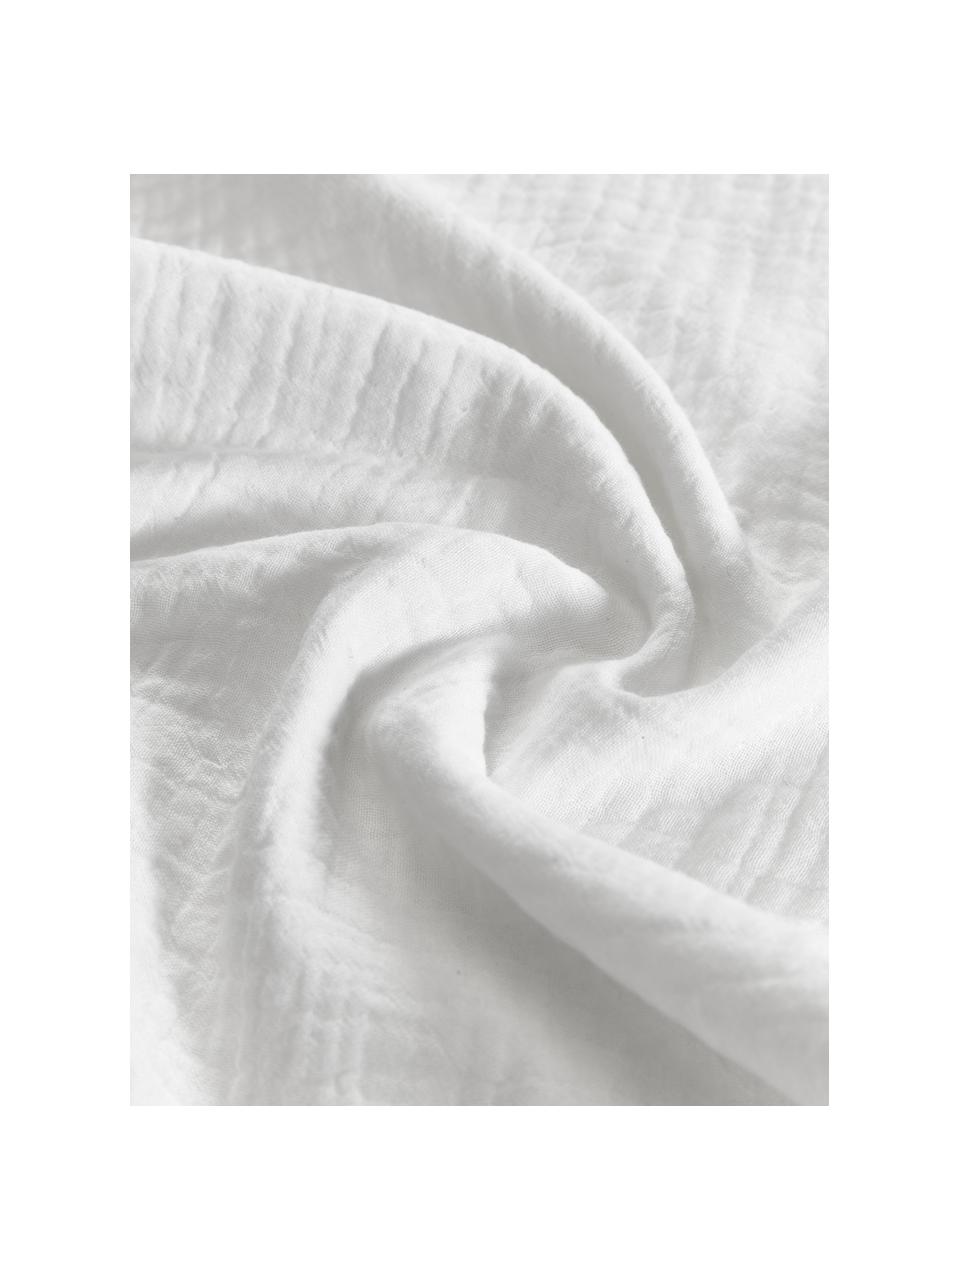 Muslin-Kopfkissenbezüge aus Baumwolle in Weiß, 2 Stück, Webart: Muslin Fadendichte 200 TC, Weiß, B 40 x L 80 cm